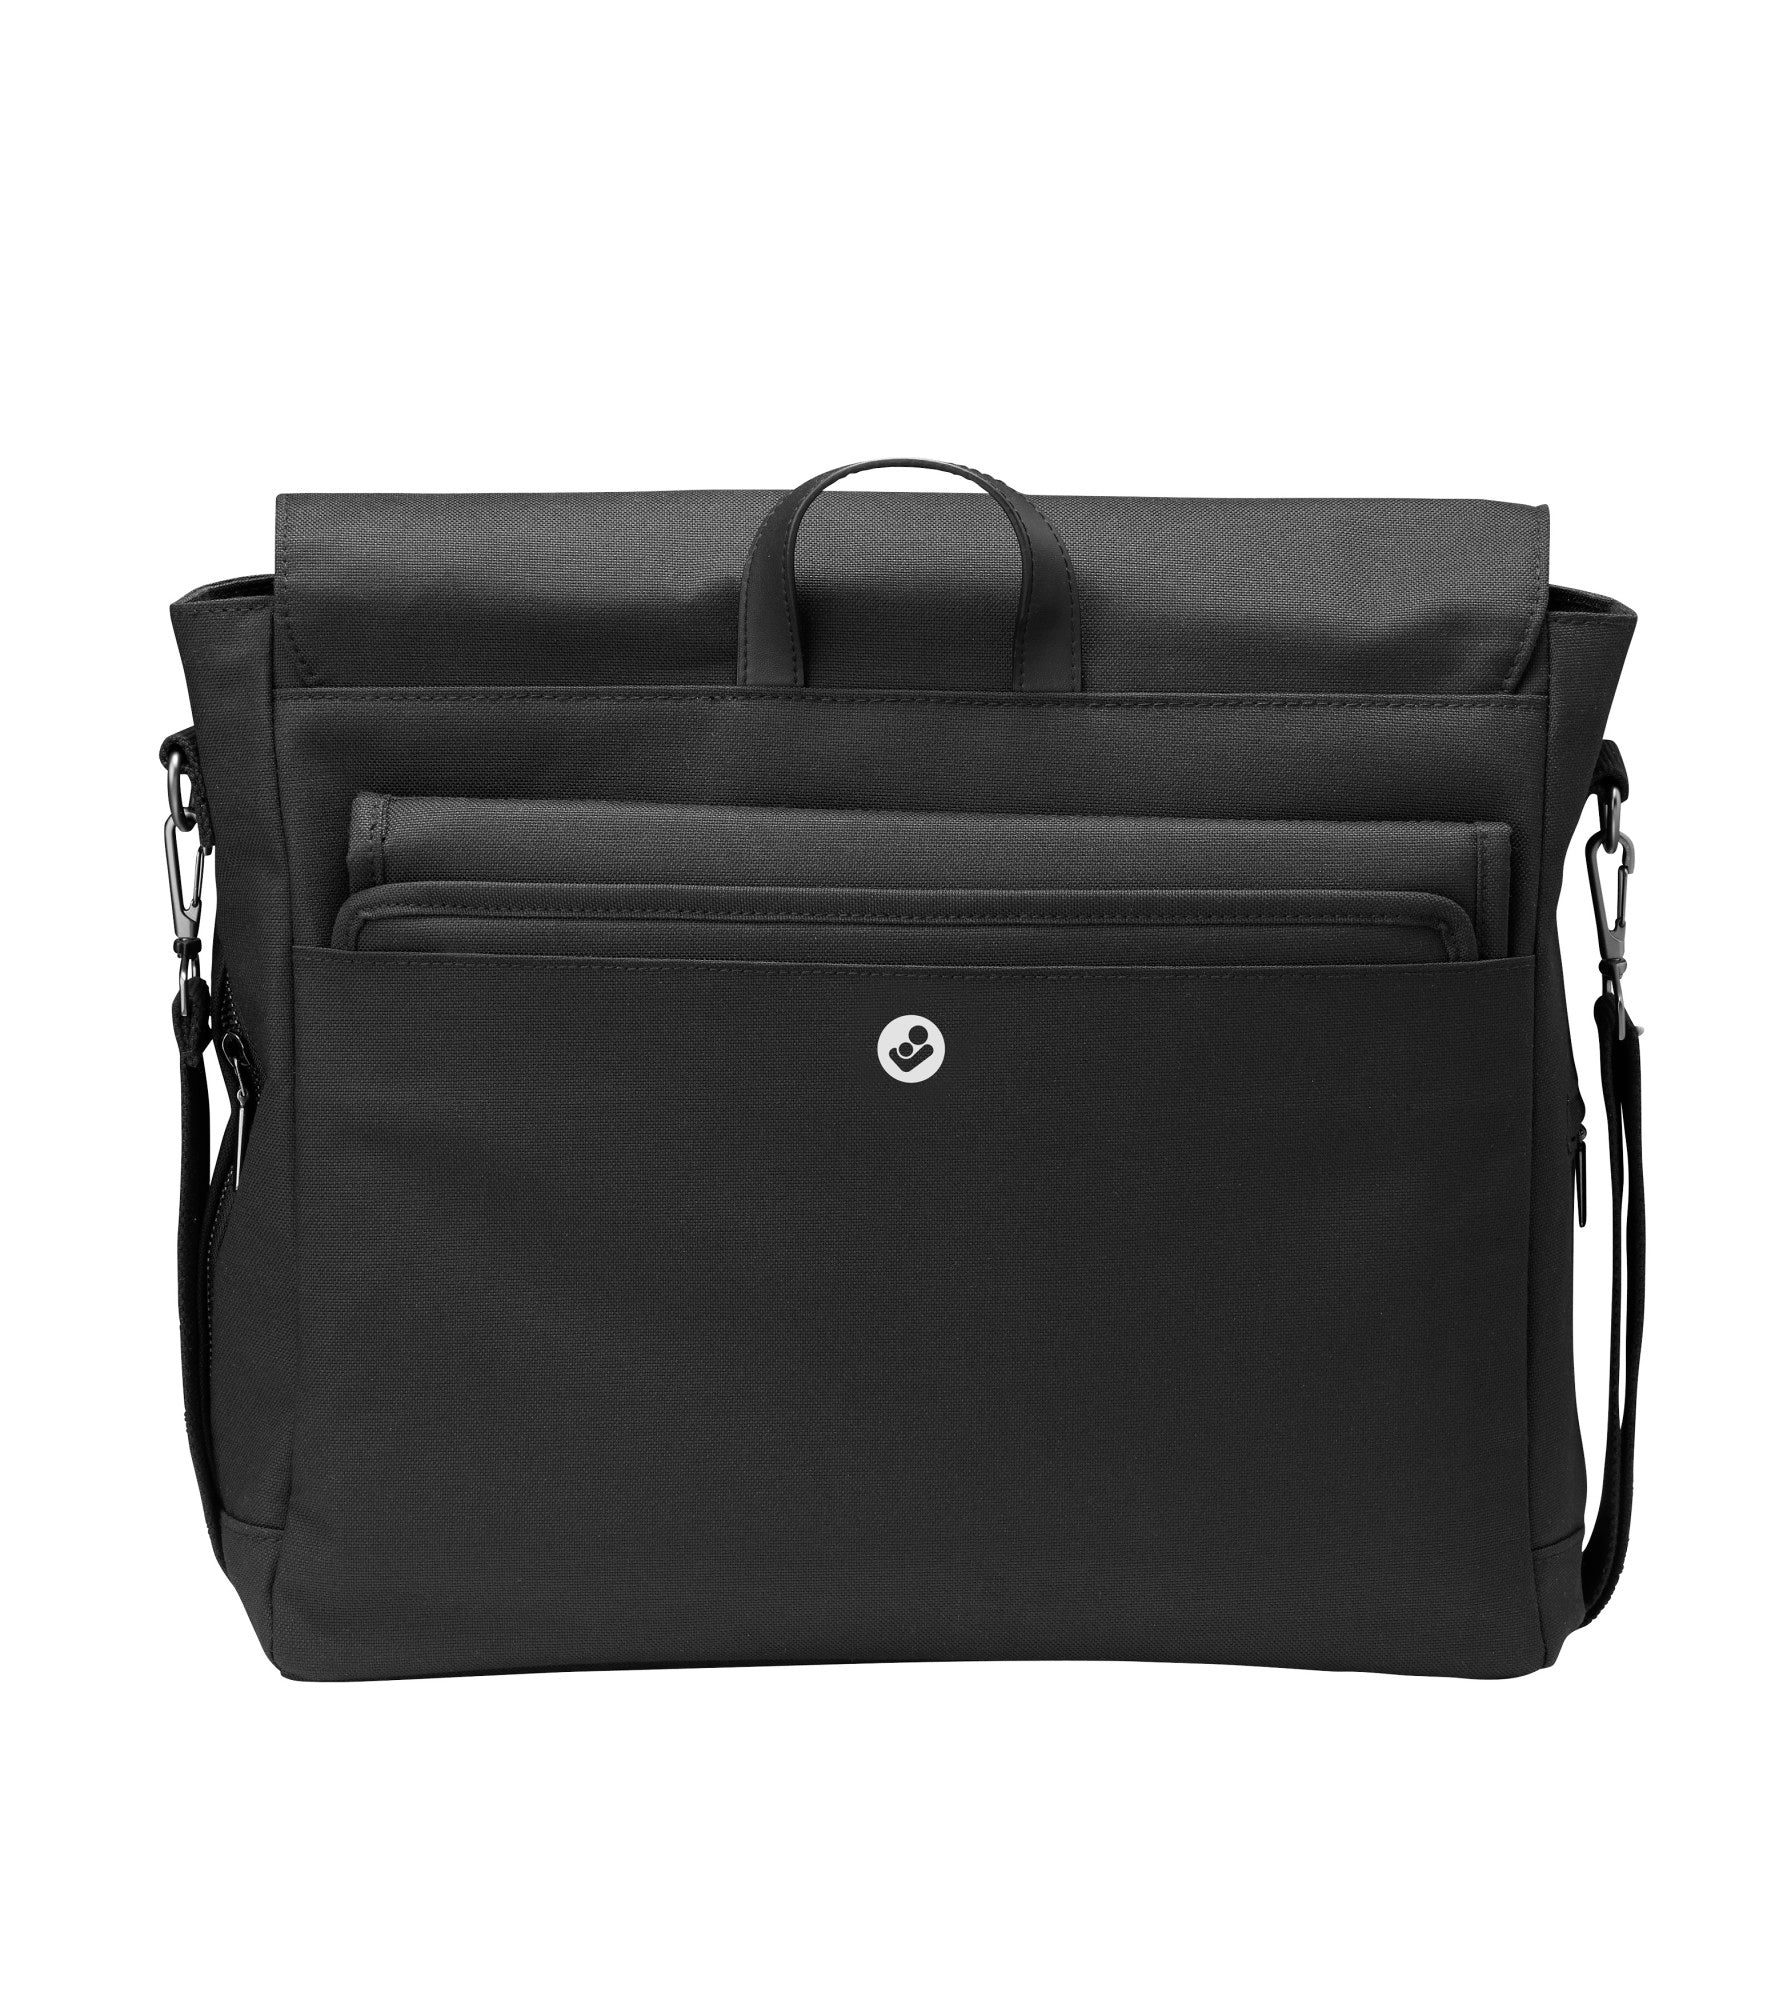 Maxi-Cosi Modern Diaper Bag in Essential Black